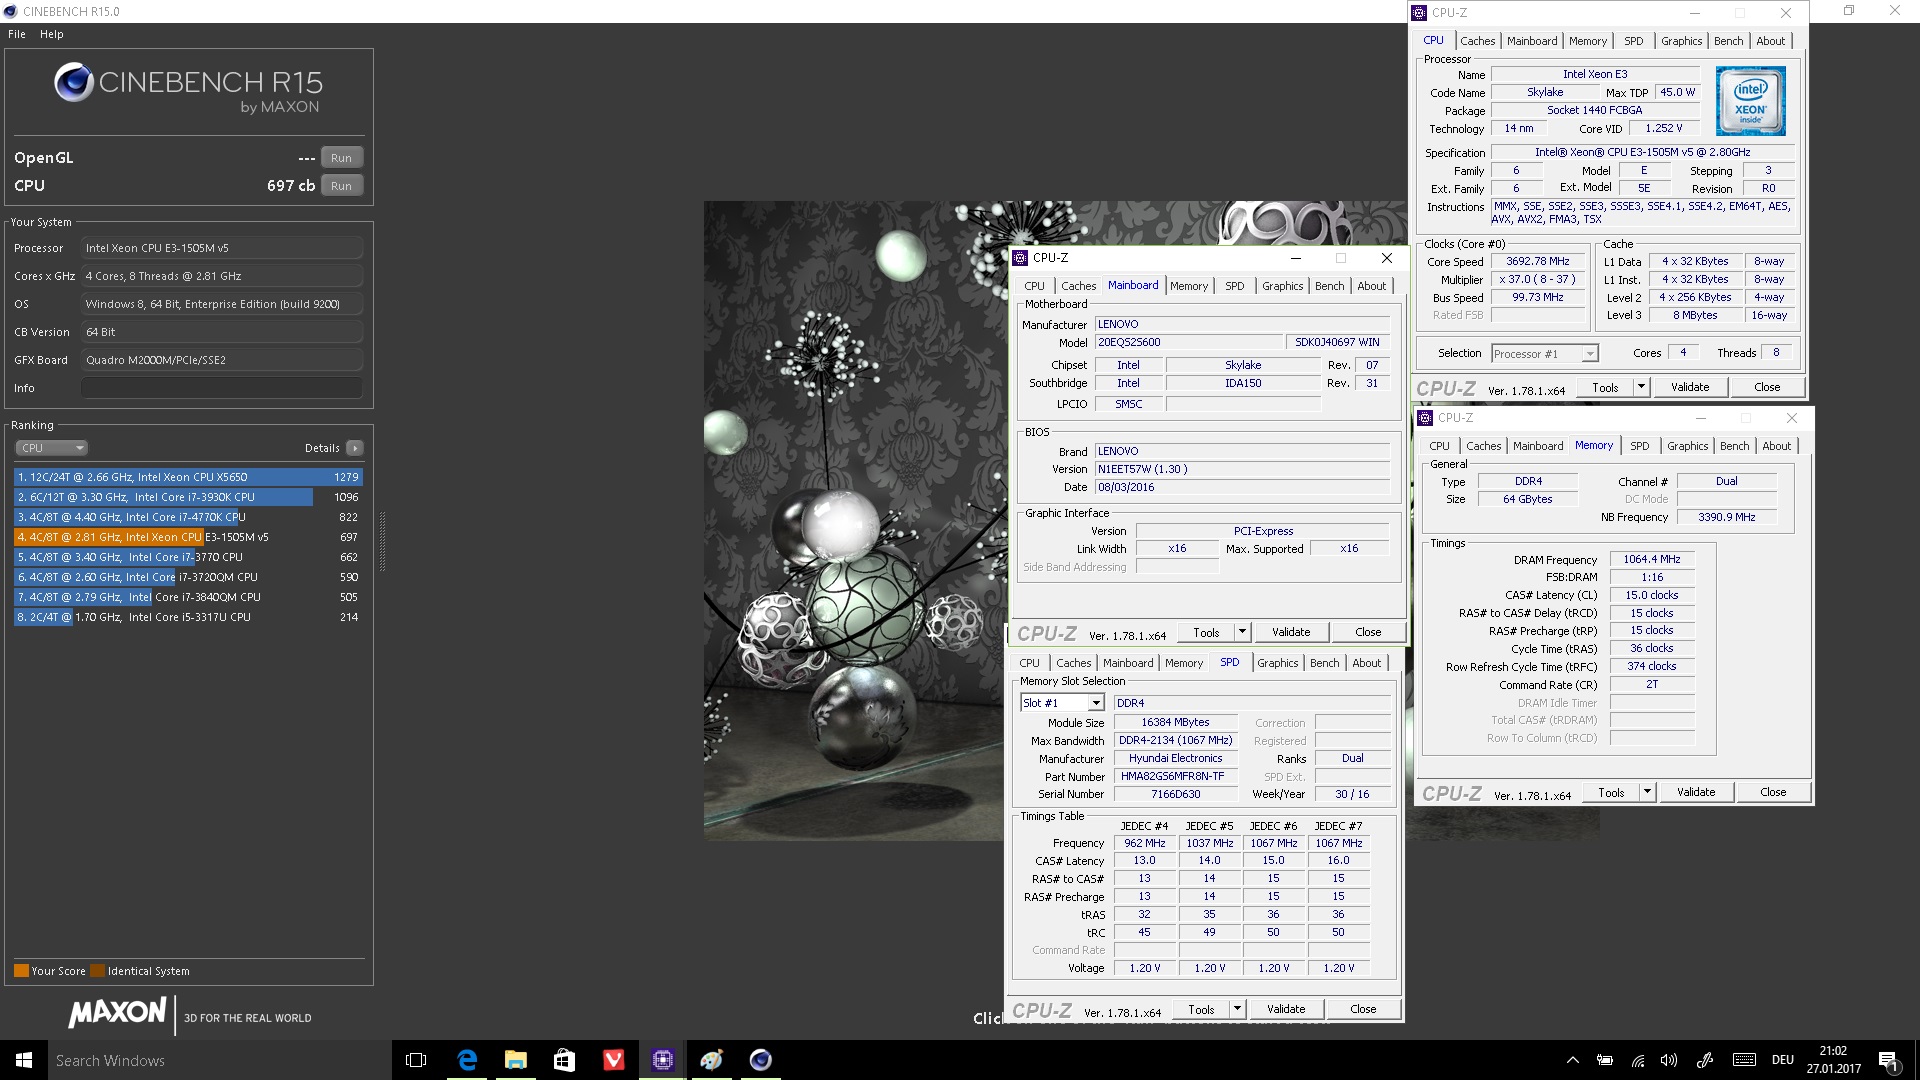 M4TR1Z`s Cinebench - R15 score: 697 cb with a Xeon E3 1505M v5